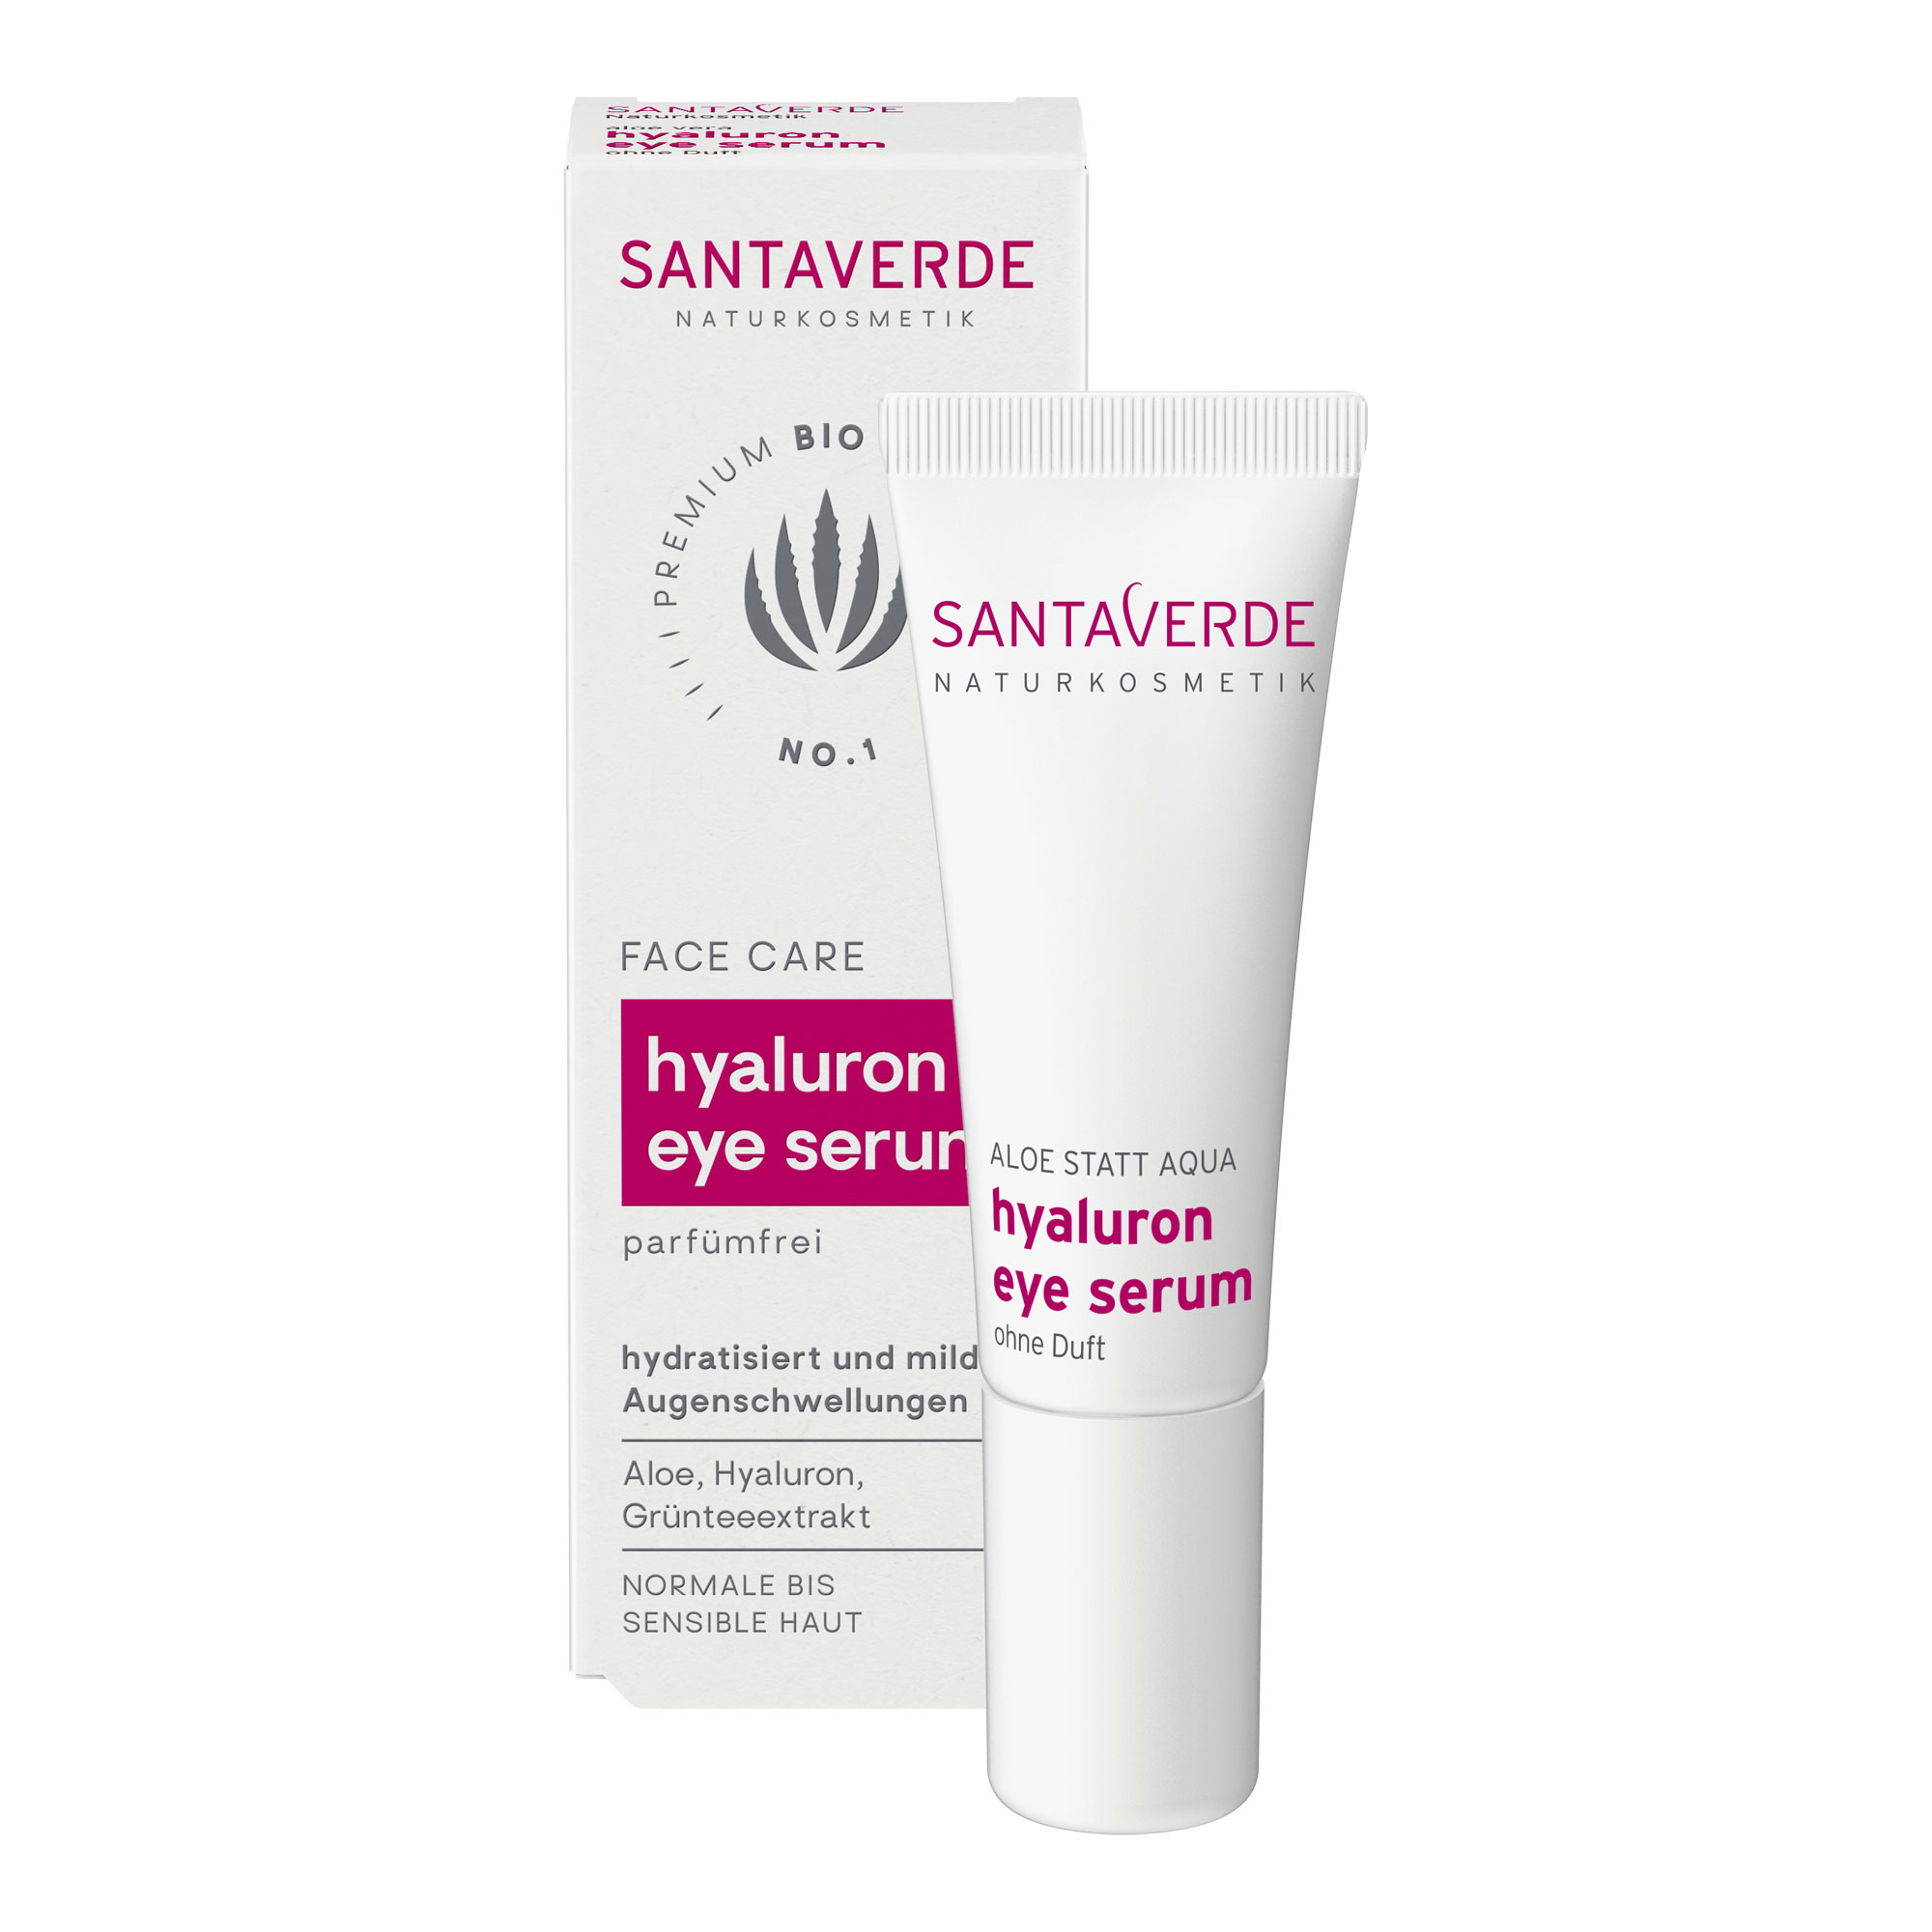 Feuchtigkeitsspendendes Augenserum mit reinem Aloe Vera Saft, Hyaluron und Grünteeextrakt für sensible Haut.